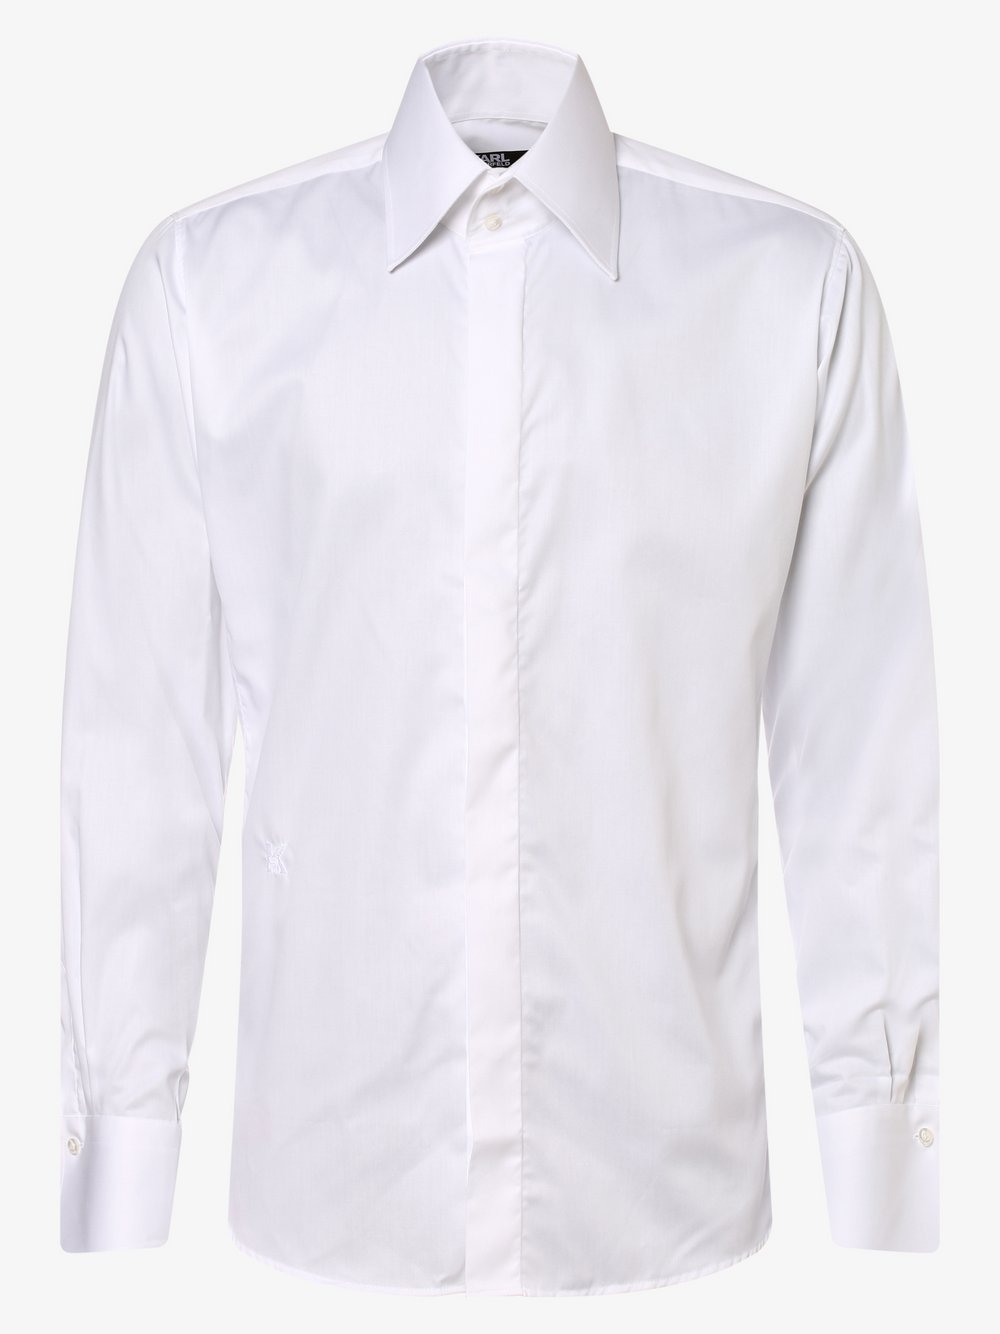 KARL LAGERFELD - Koszula męska łatwa w prasowaniu, biały